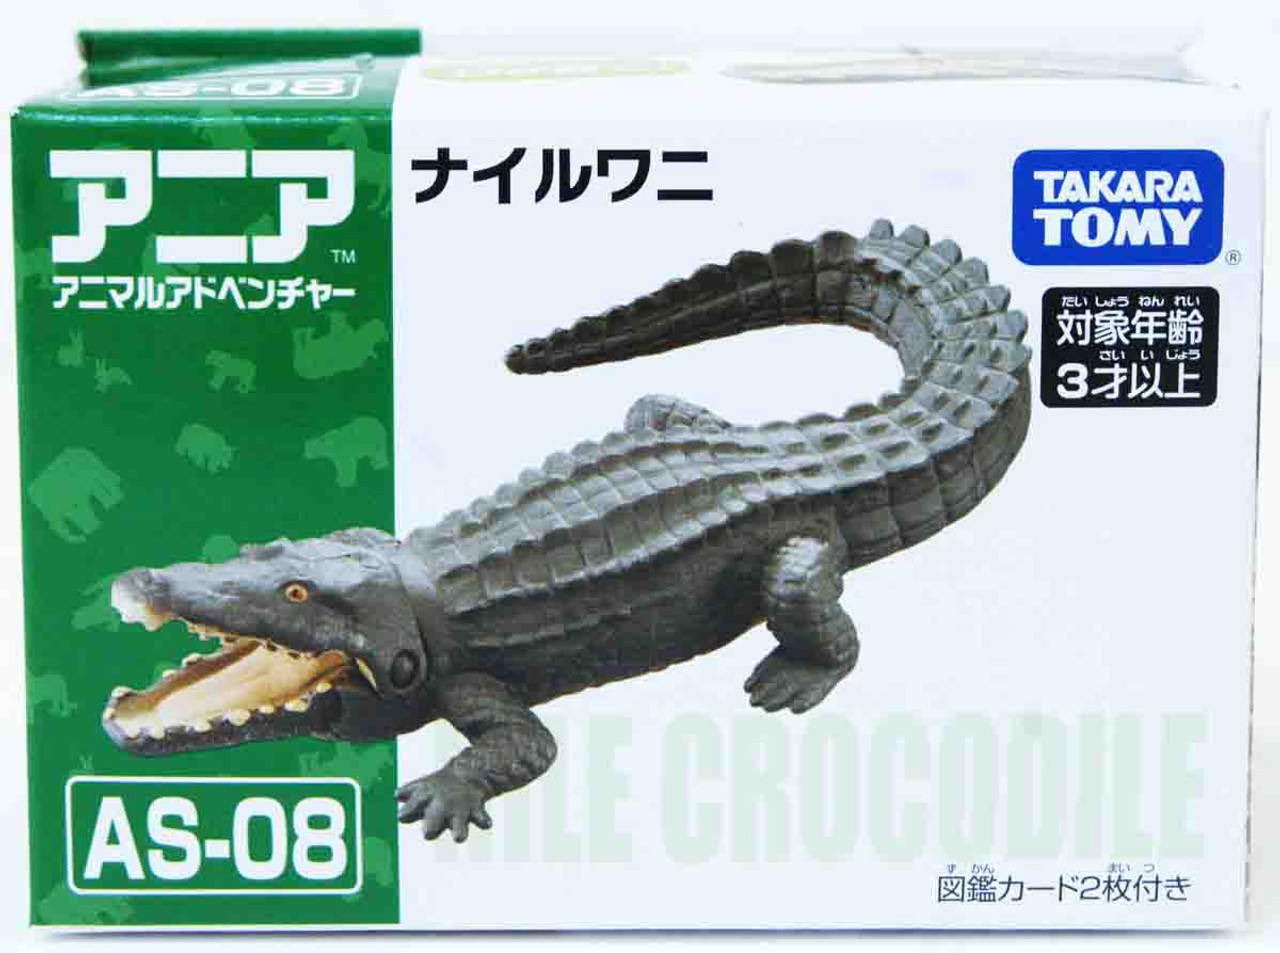 Takara Tomy AS-08 Animal Adventure Nile Crocodile Figure